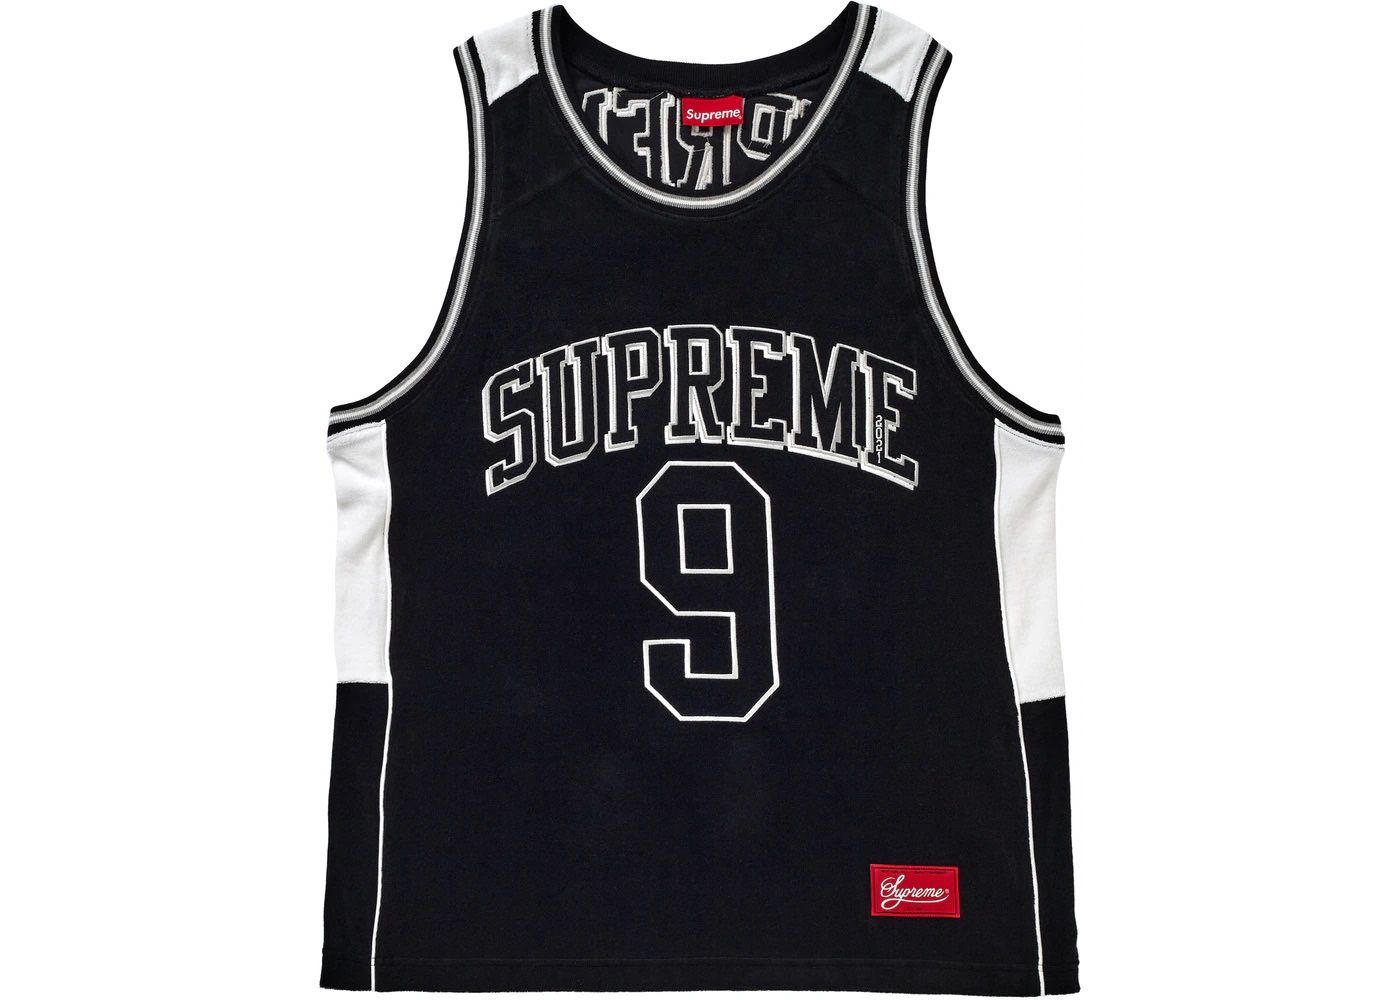 Supreme Black Jersey #9 Size M